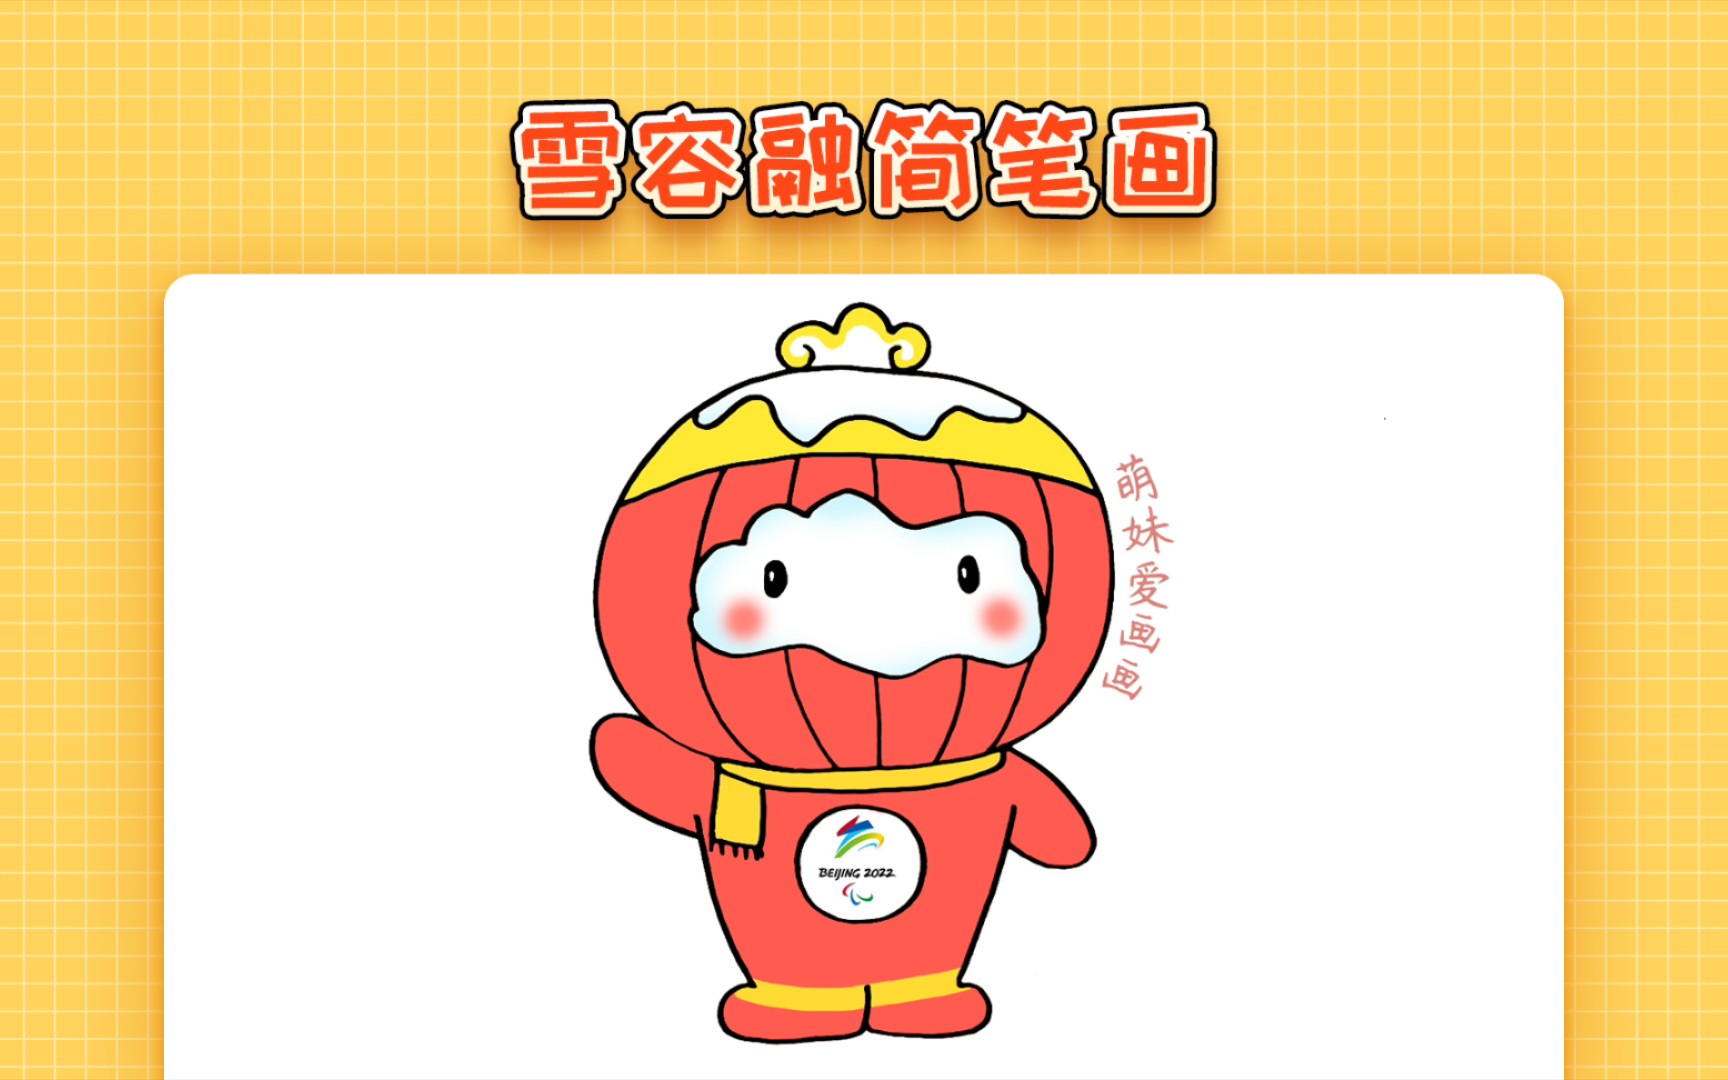 【简笔画】幼儿2022北京冬残奥会吉祥物雪容融简笔画教程